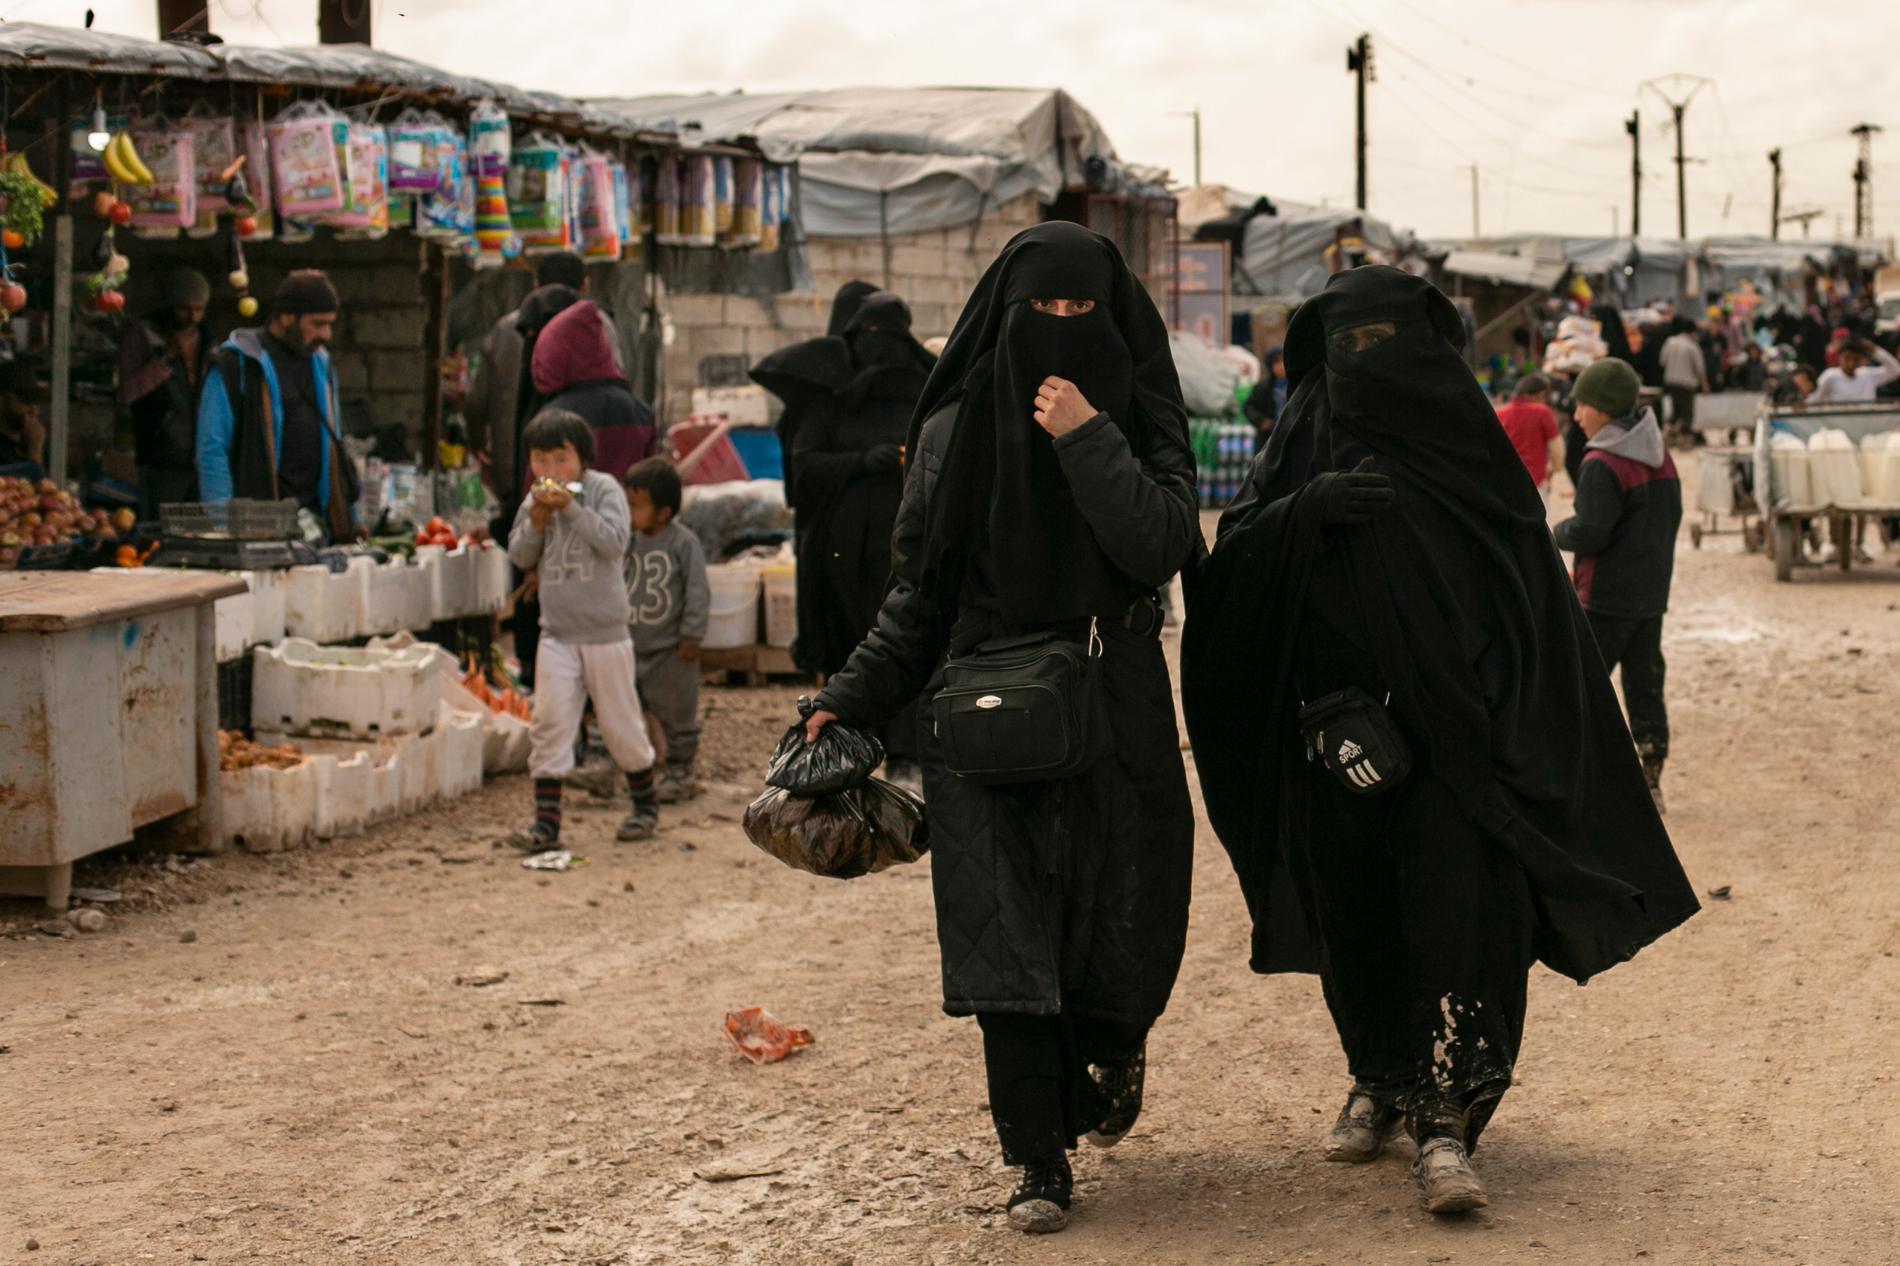 Lägret al-Hol är som en stad med affärer och andra verksamheter. På bilden syns kvinnor som handlat mat på marknaden. Arkivbild.